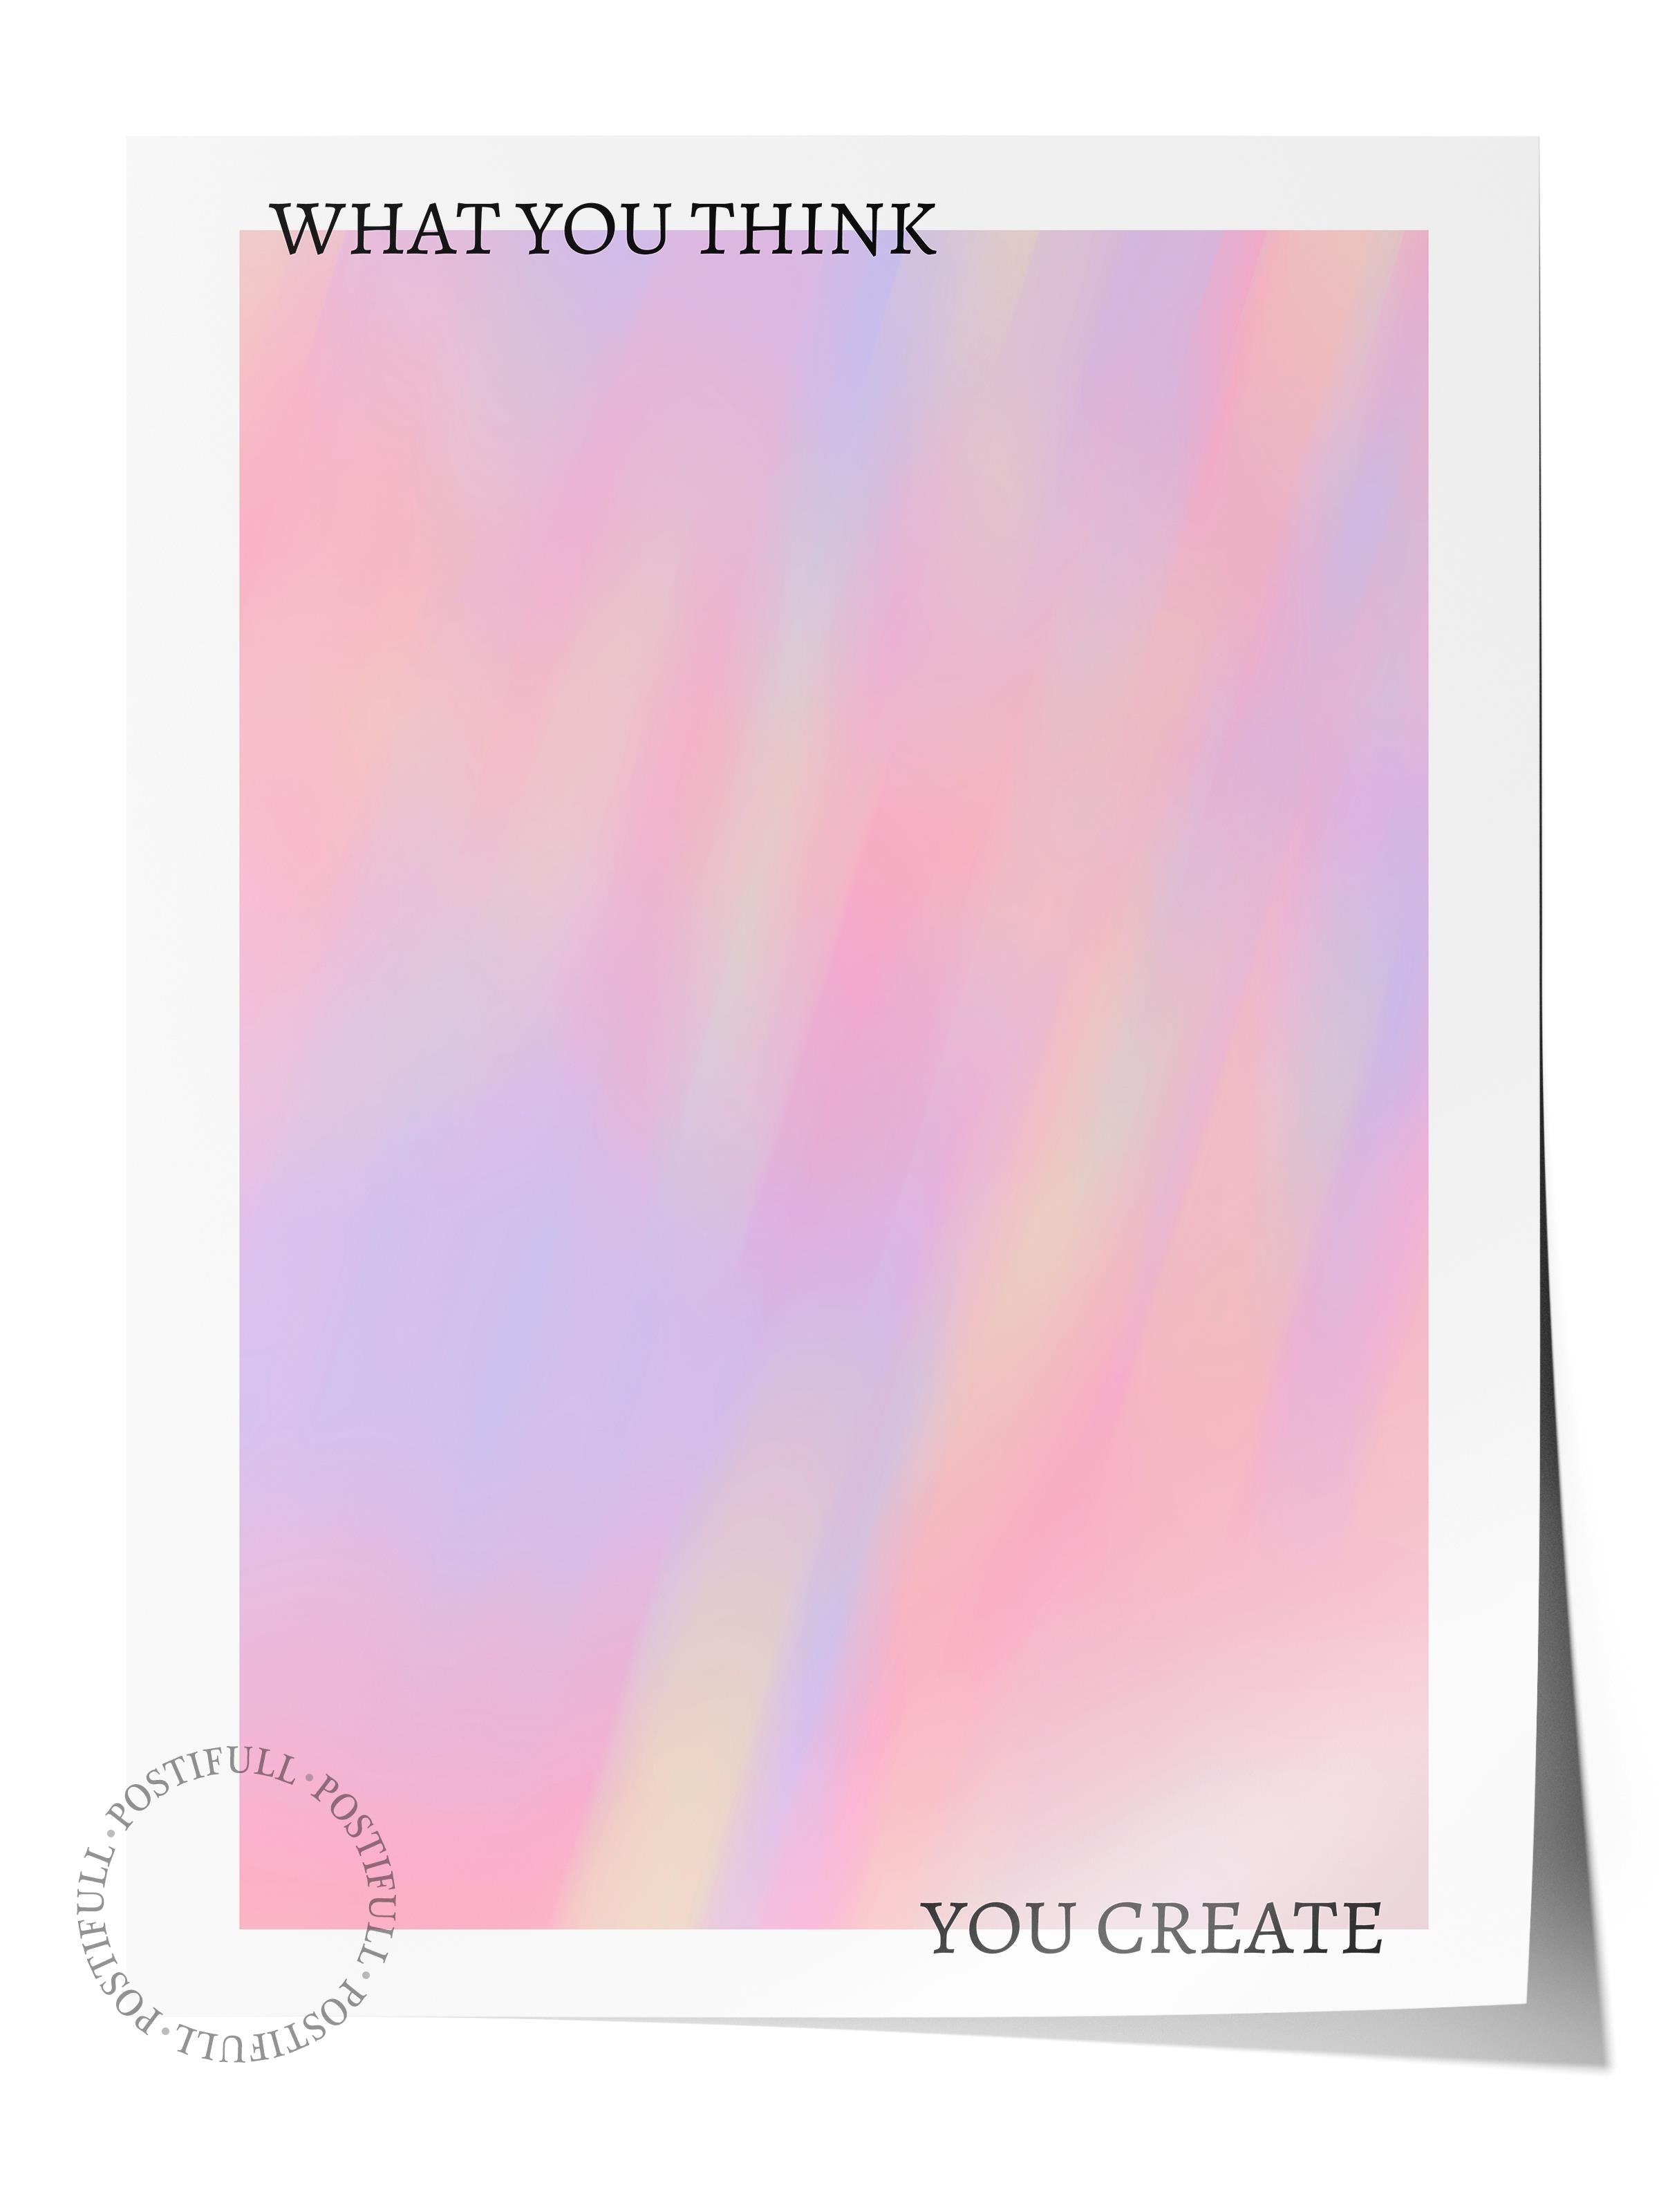 Çerçevesiz Poster, Aura Serisi NO:195 - Karışık Renkli, Melek Numaraları, Renkli Poster